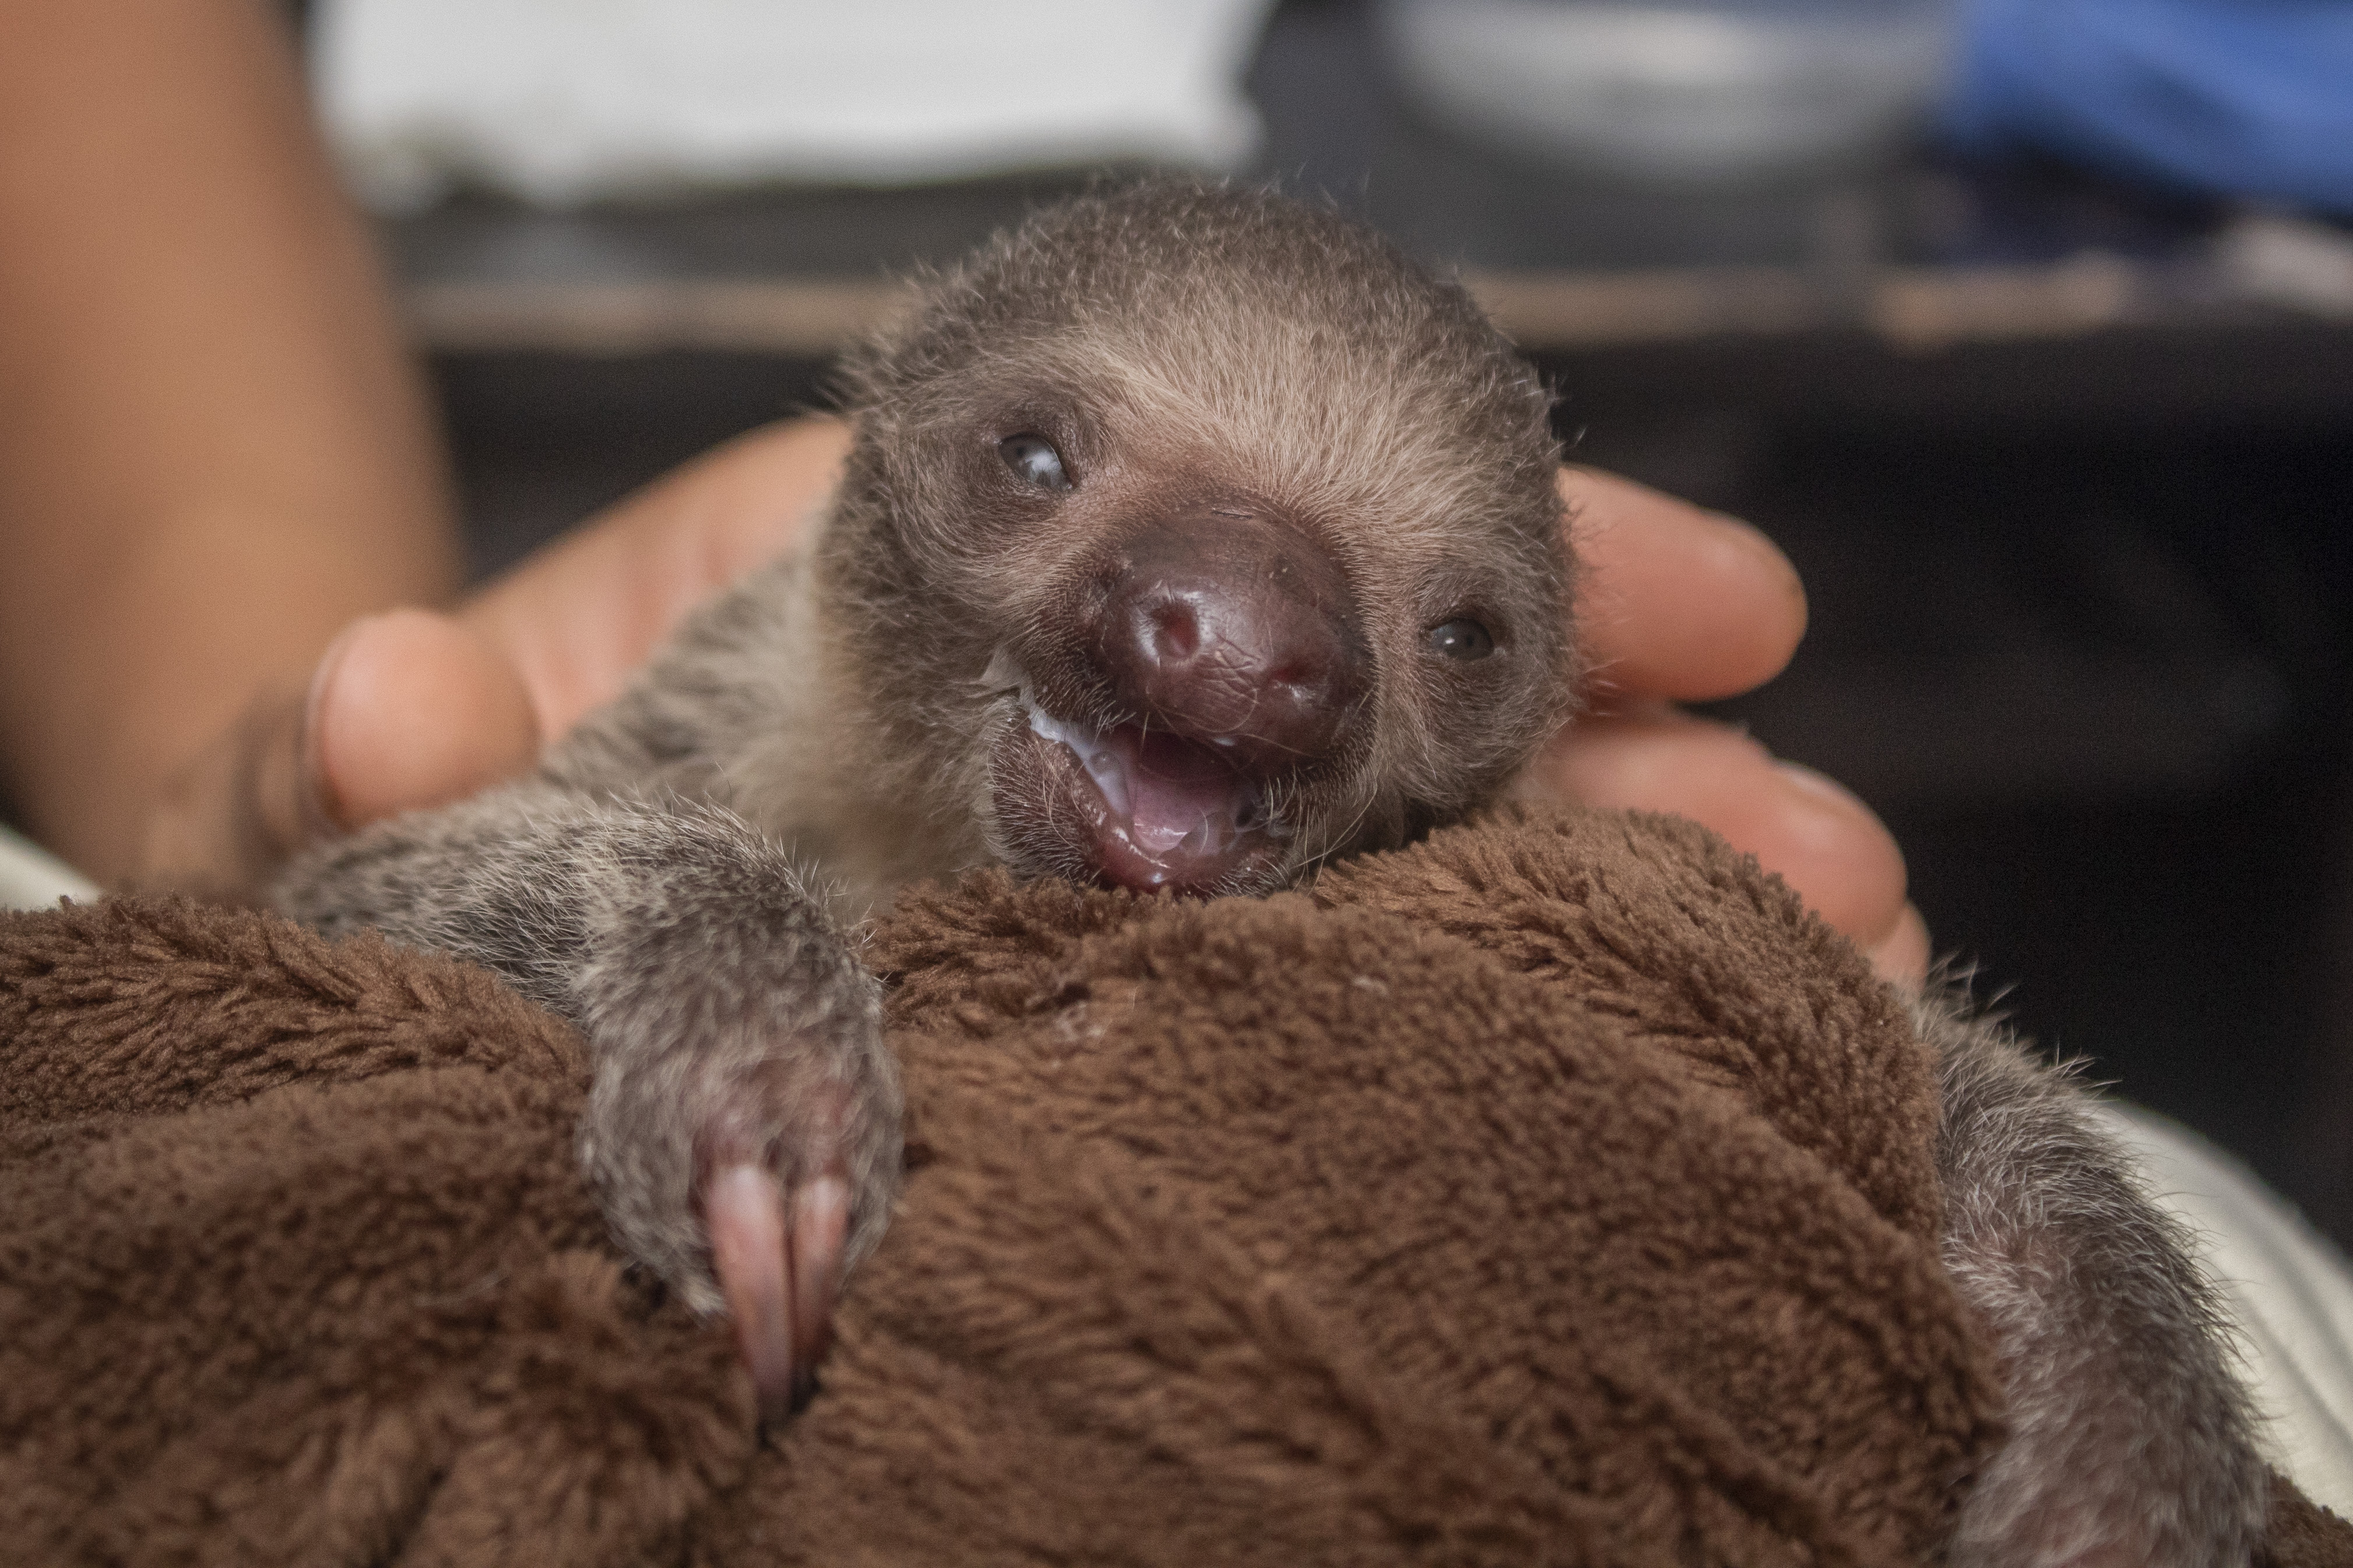 An adorable baby sloth